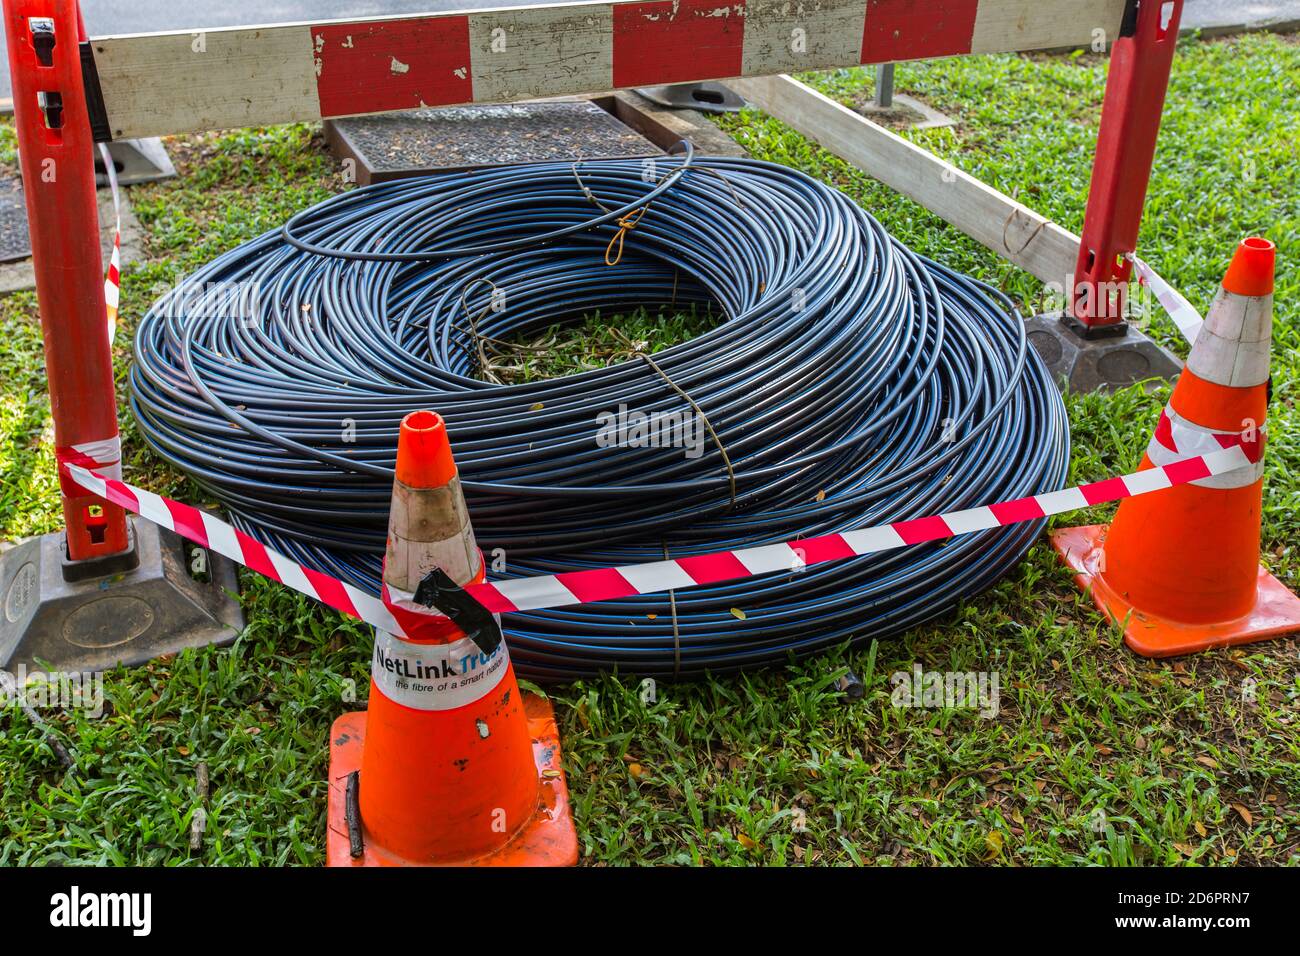 Les câbles à fibre optique industrielle sont enroulés et placés sur l'herbe, les cônes sont autour pour indiquer de ne pas les enlever. Banque D'Images